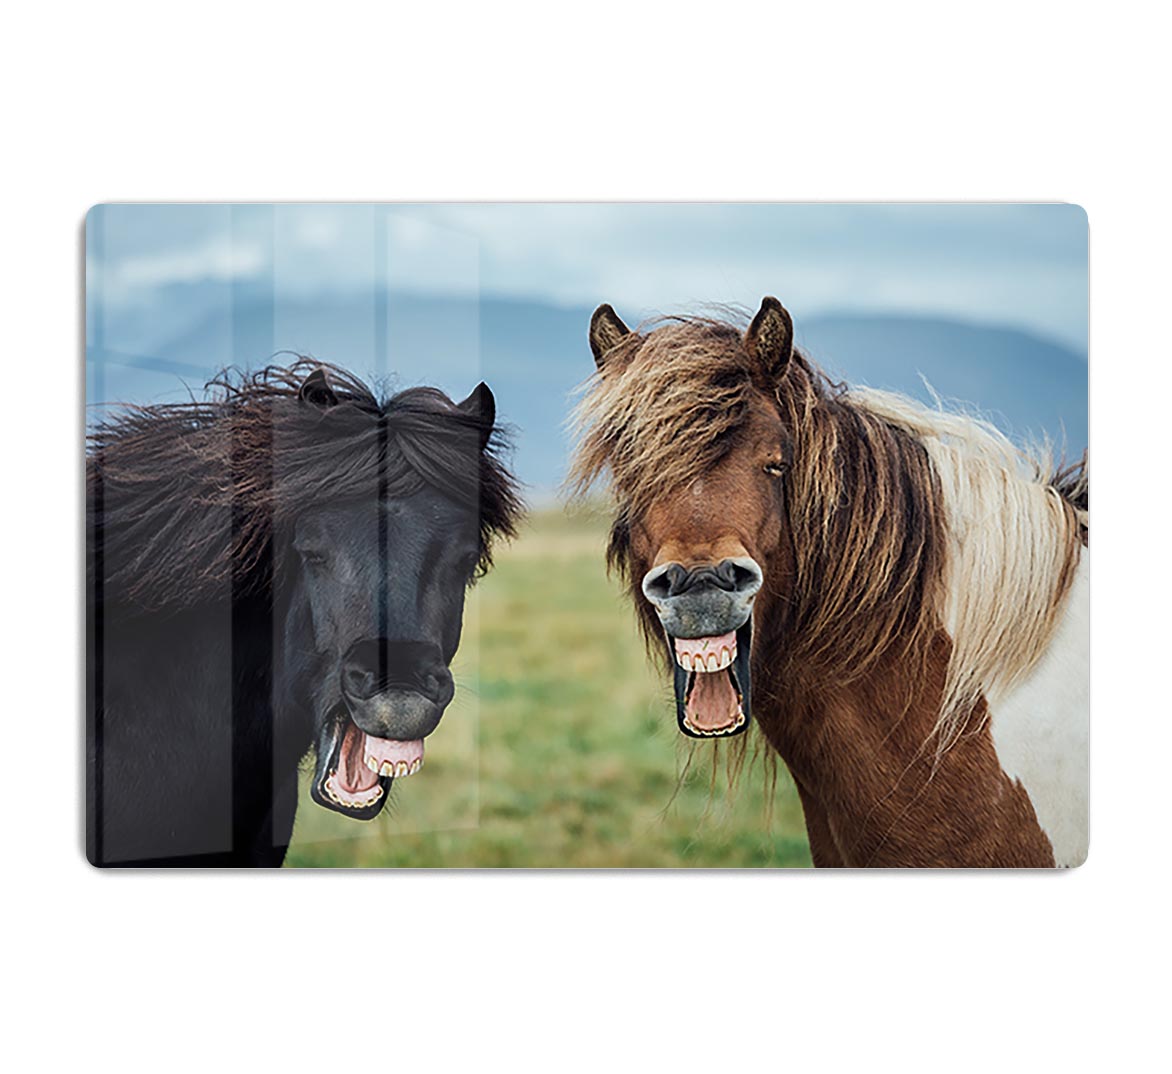 Smiling Horses HD Metal Print - Canvas Art Rocks - 1